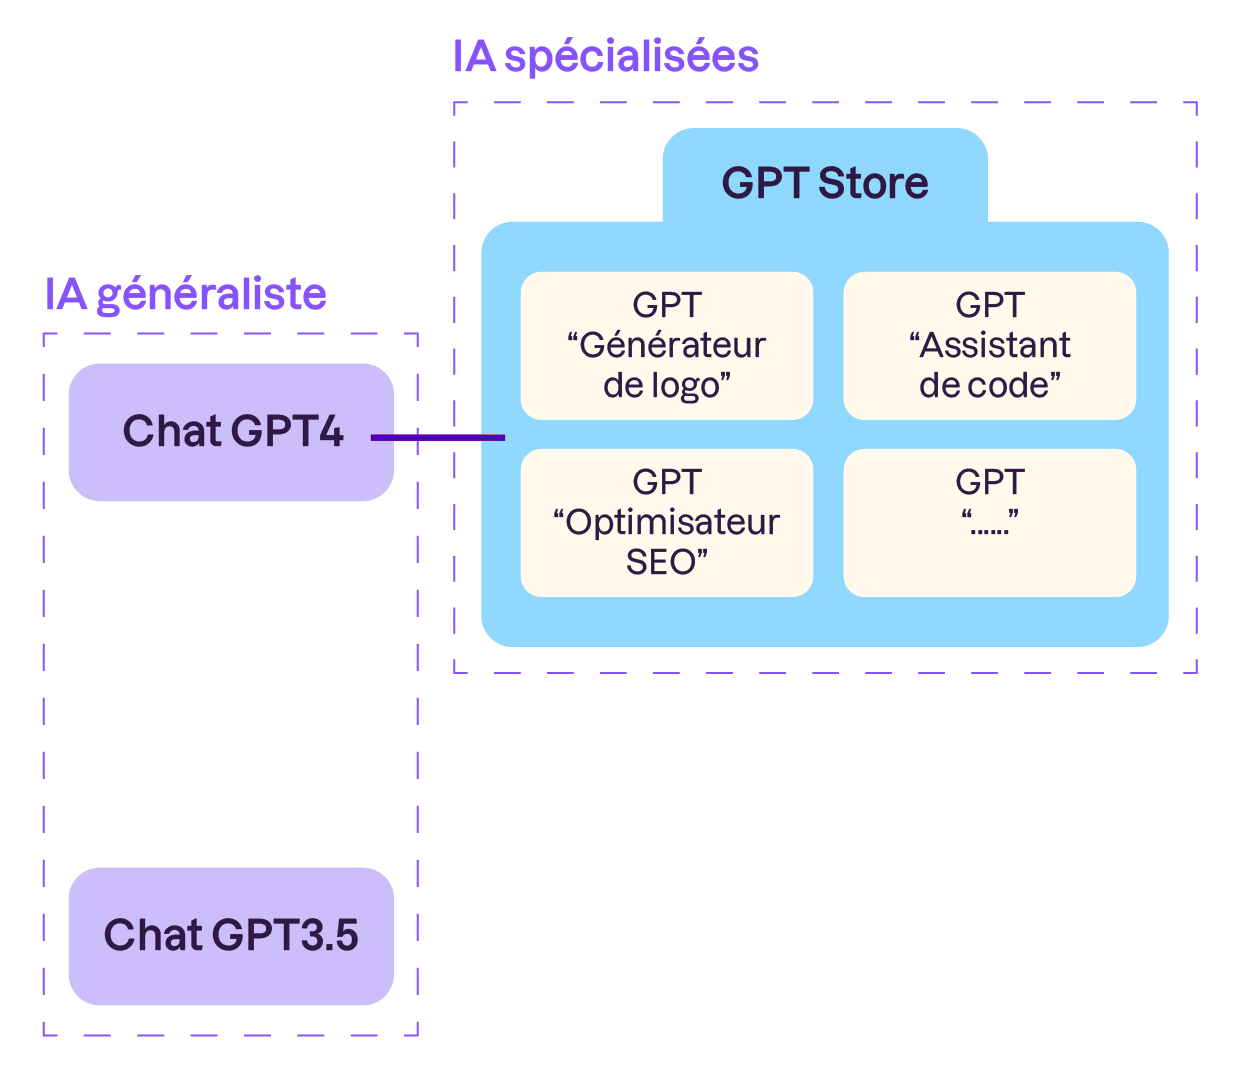 Schéma organisé 2 parties.  En haut un premier encadré où il est écrit ChatGPT4. avec une étiquette “IA généraliste”. Qui est relié à un encadré plus large, sous l’étiquette “IA spécialisée”. Cet encadré comprend des rectangles